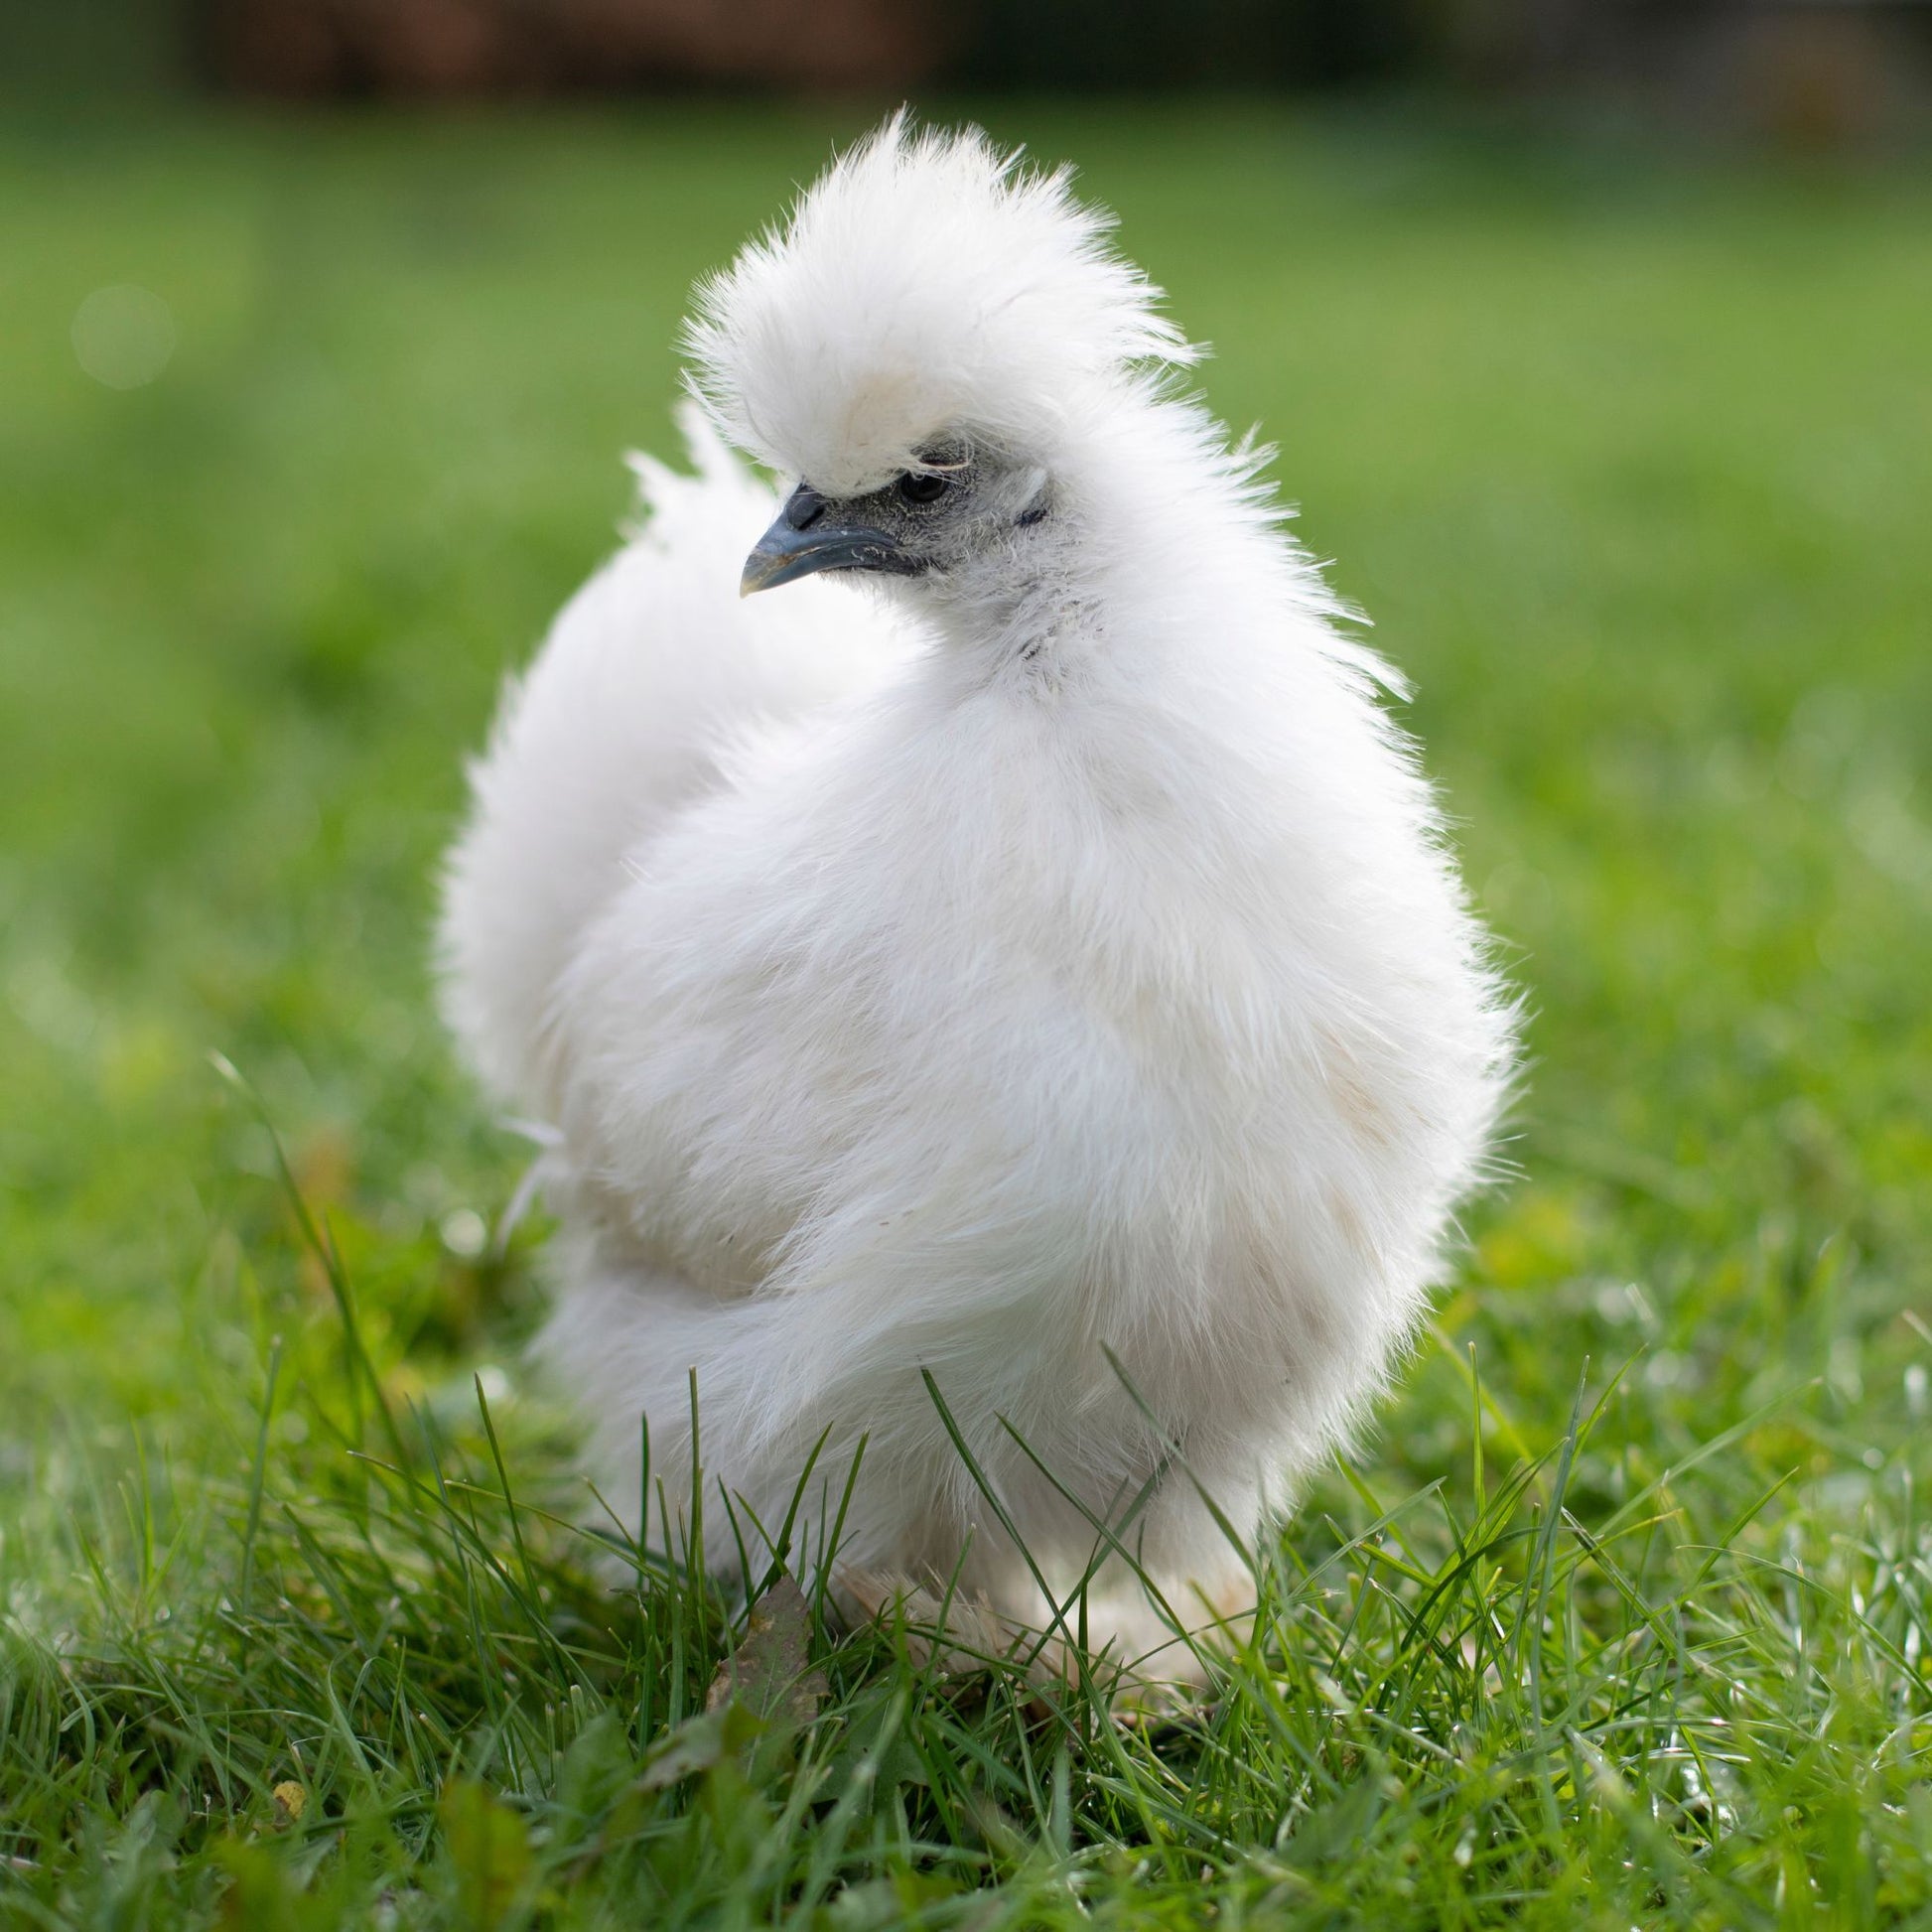 Silked White Easter Egger chicken on green grass.